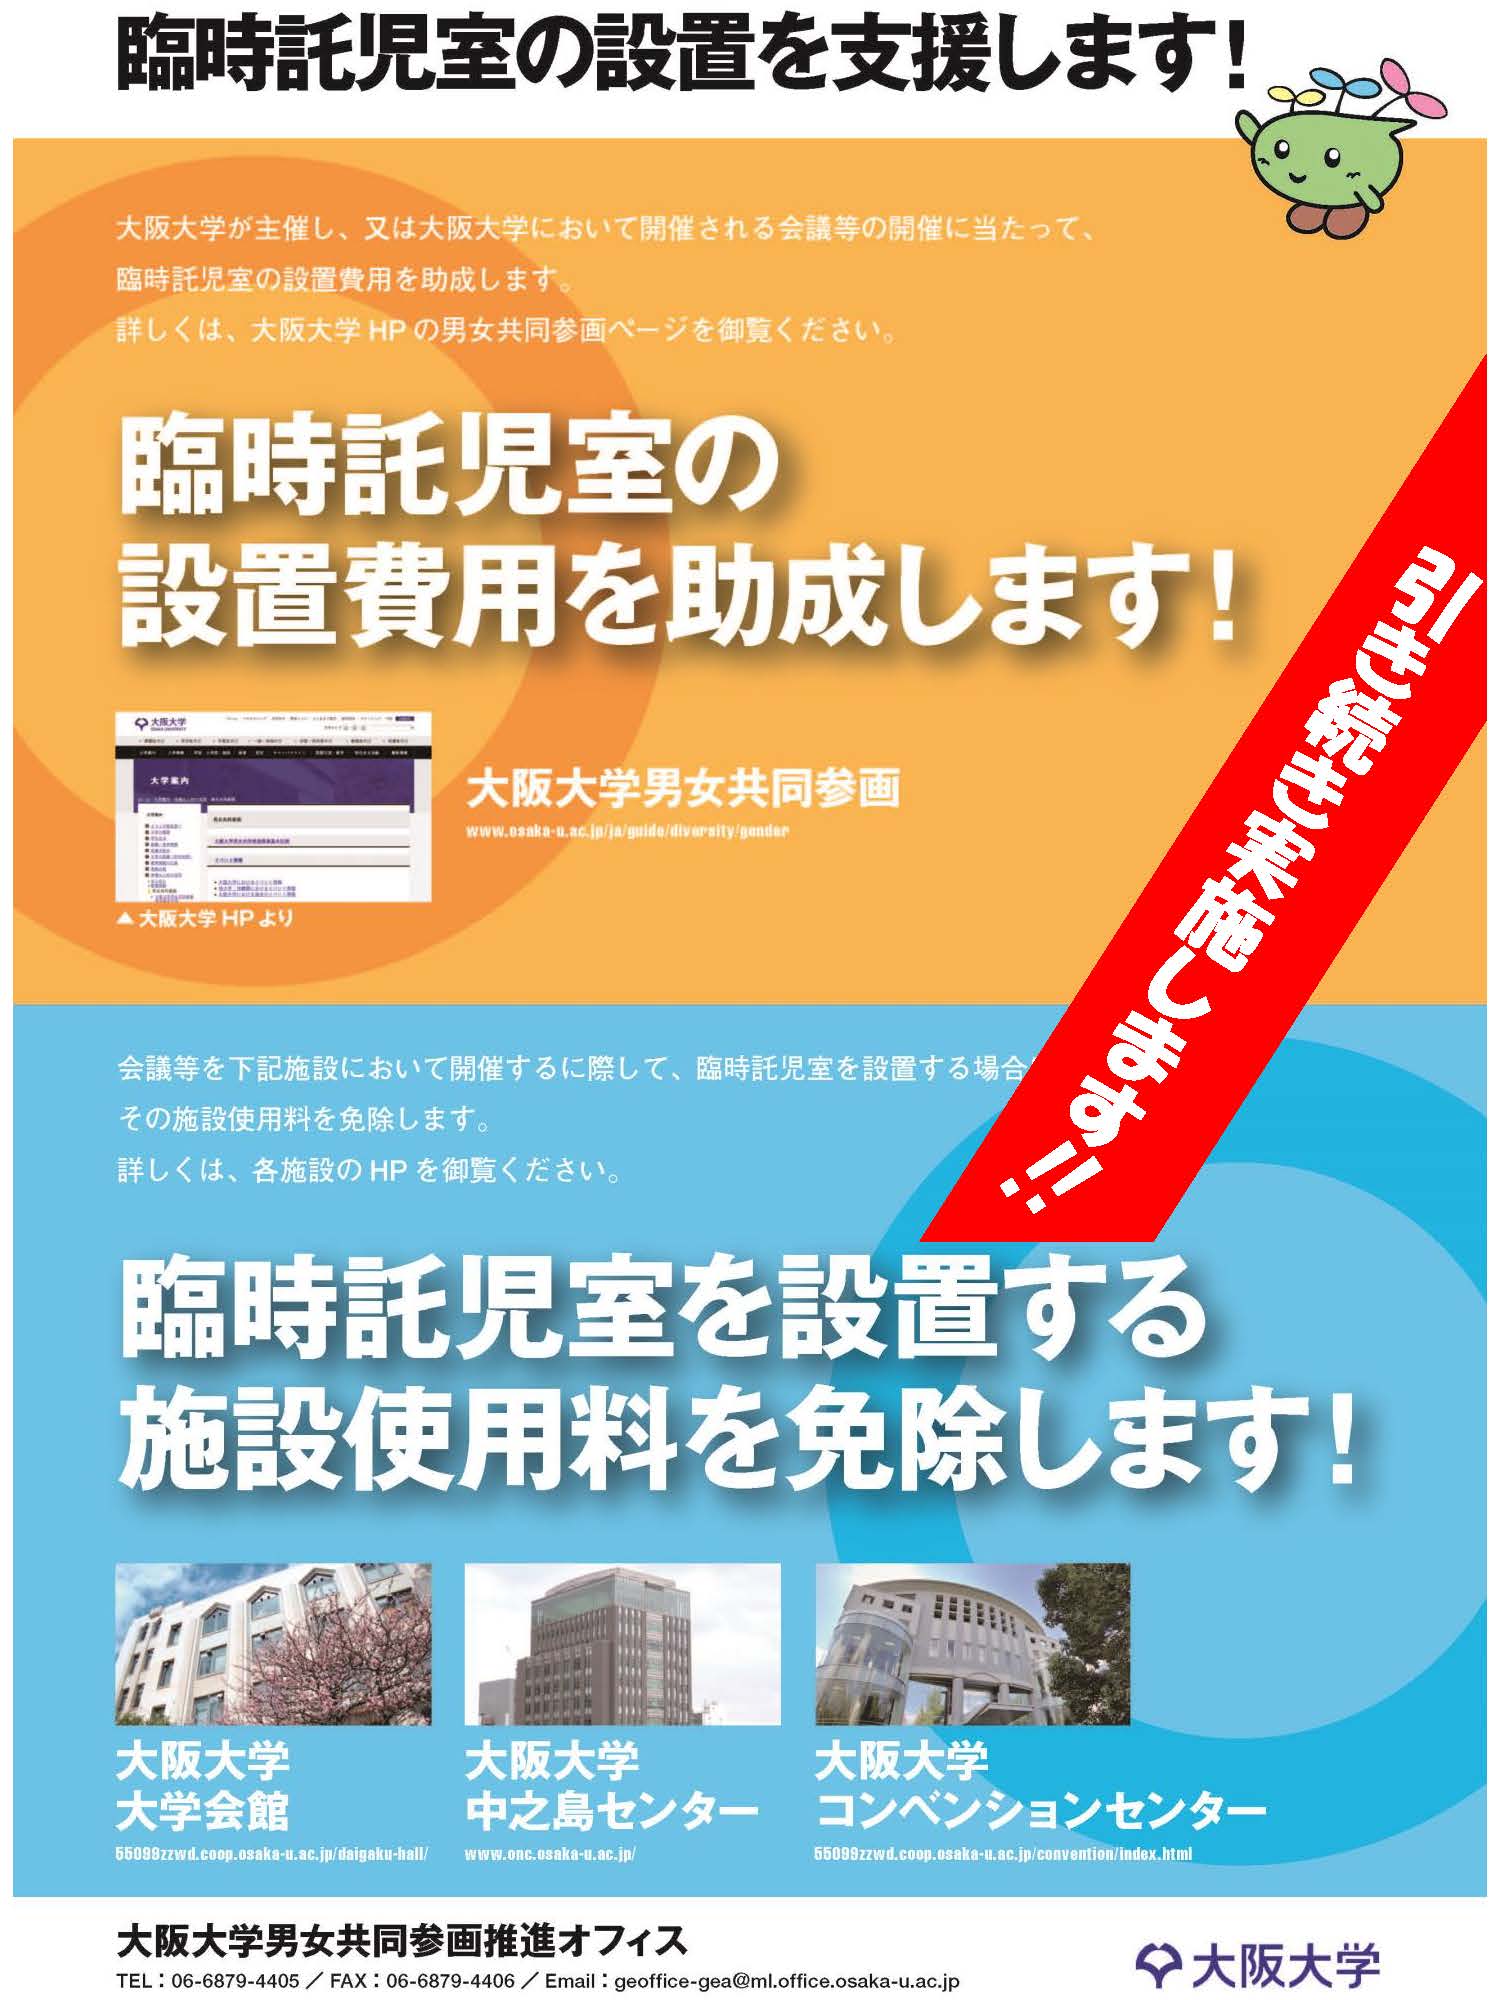 阪大での学会等開催時の臨時託児室設置を支援します